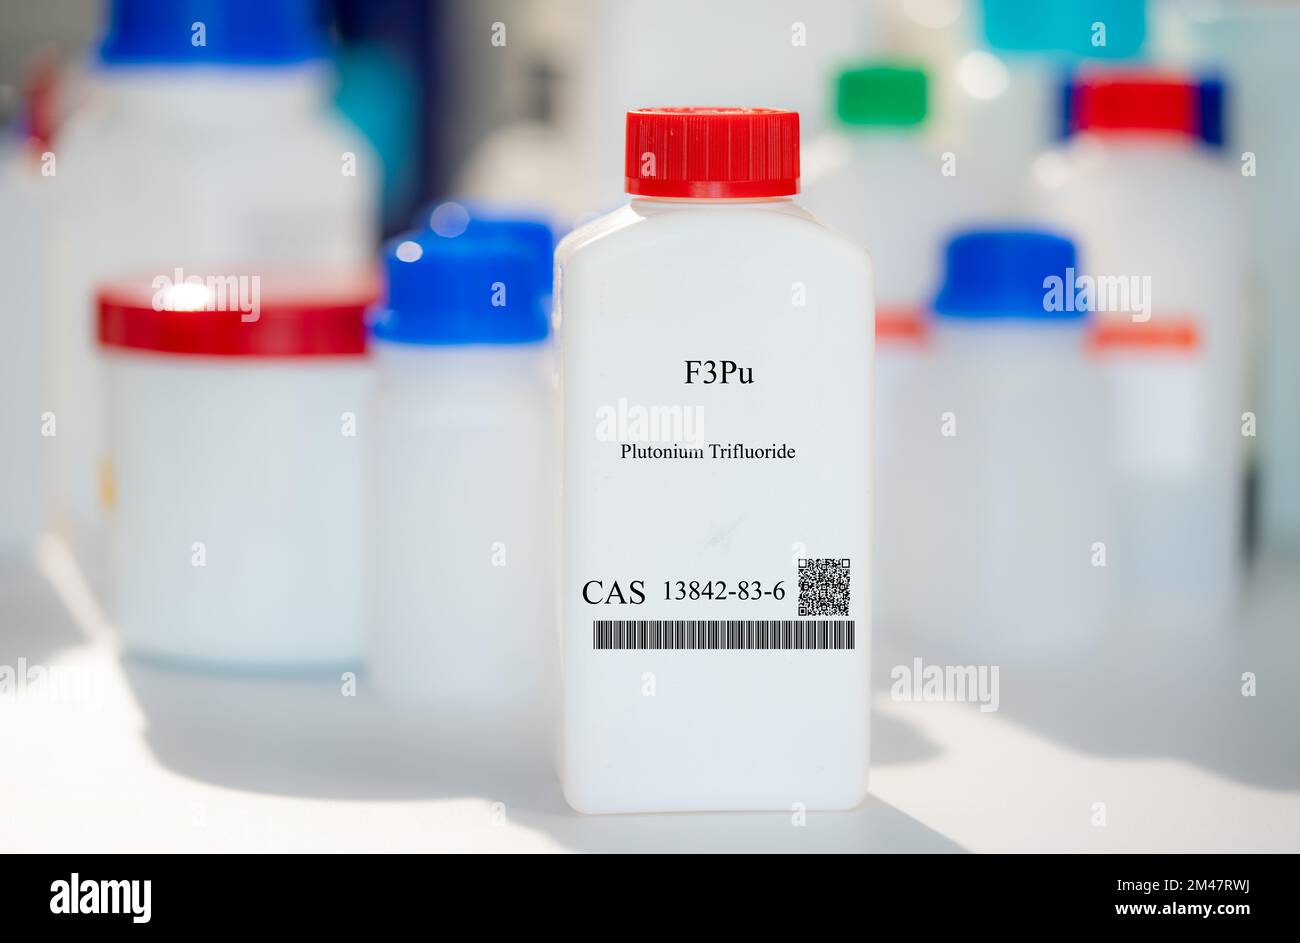 F3Pu trifluorure de plutonium cas 13842-83-6 substance chimique dans un emballage de laboratoire en plastique blanc Banque D'Images